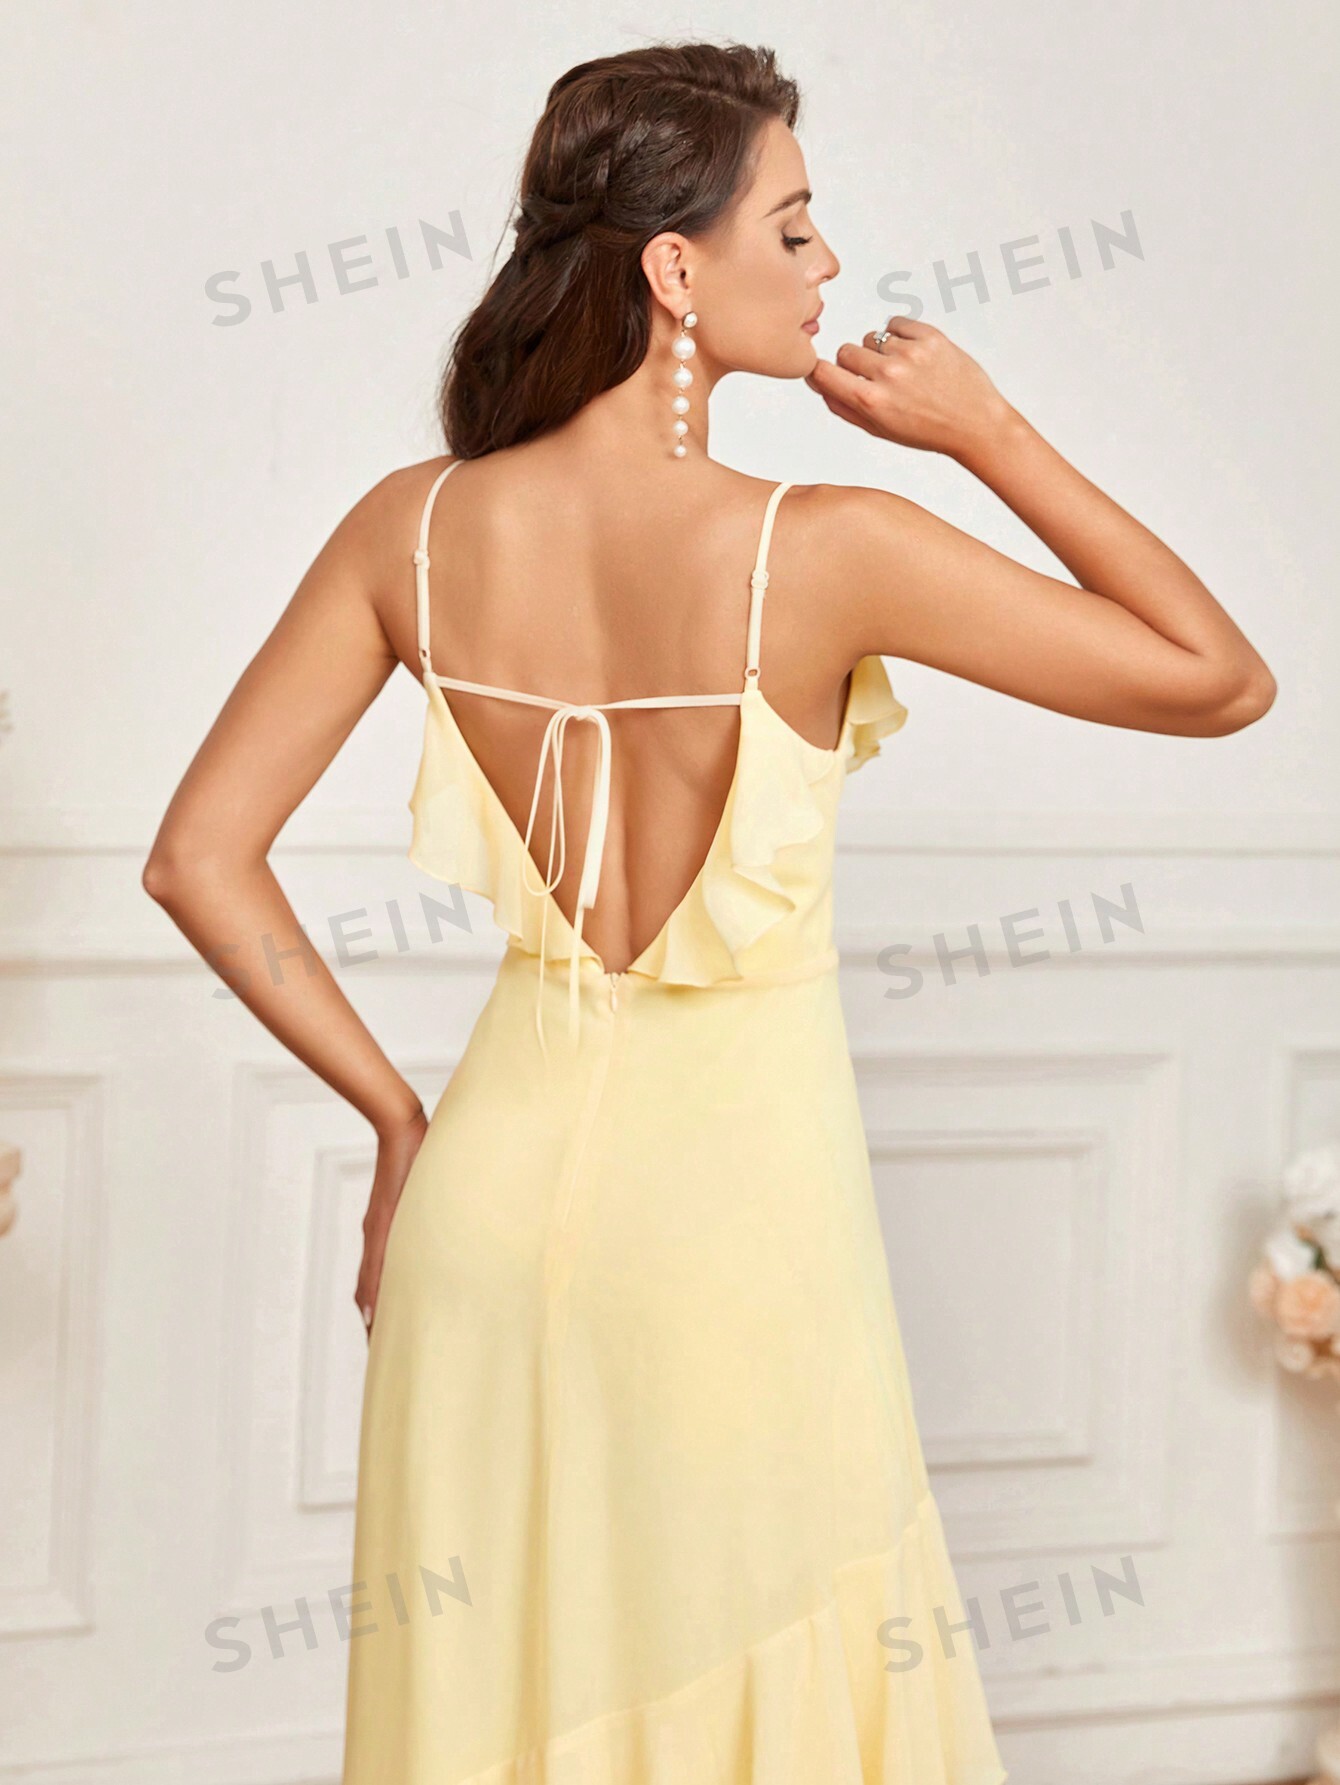 SHEIN Belle Элегантное романтическое желтое сексуальное платье-комбинация с открытой спиной и рюшами по подолу, желтый мини платье annorlunda с открытой спиной рюшами и корсажем